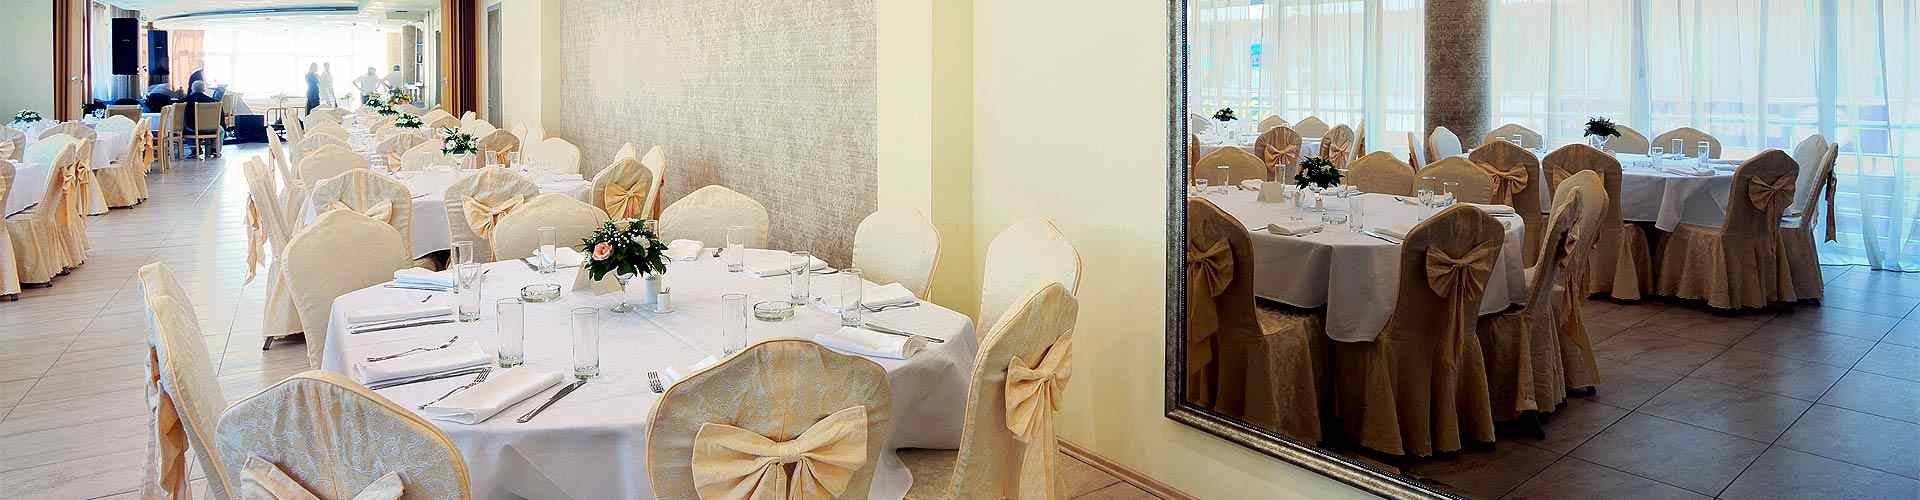 Restaurantes para bodas 2019 en Carboniella